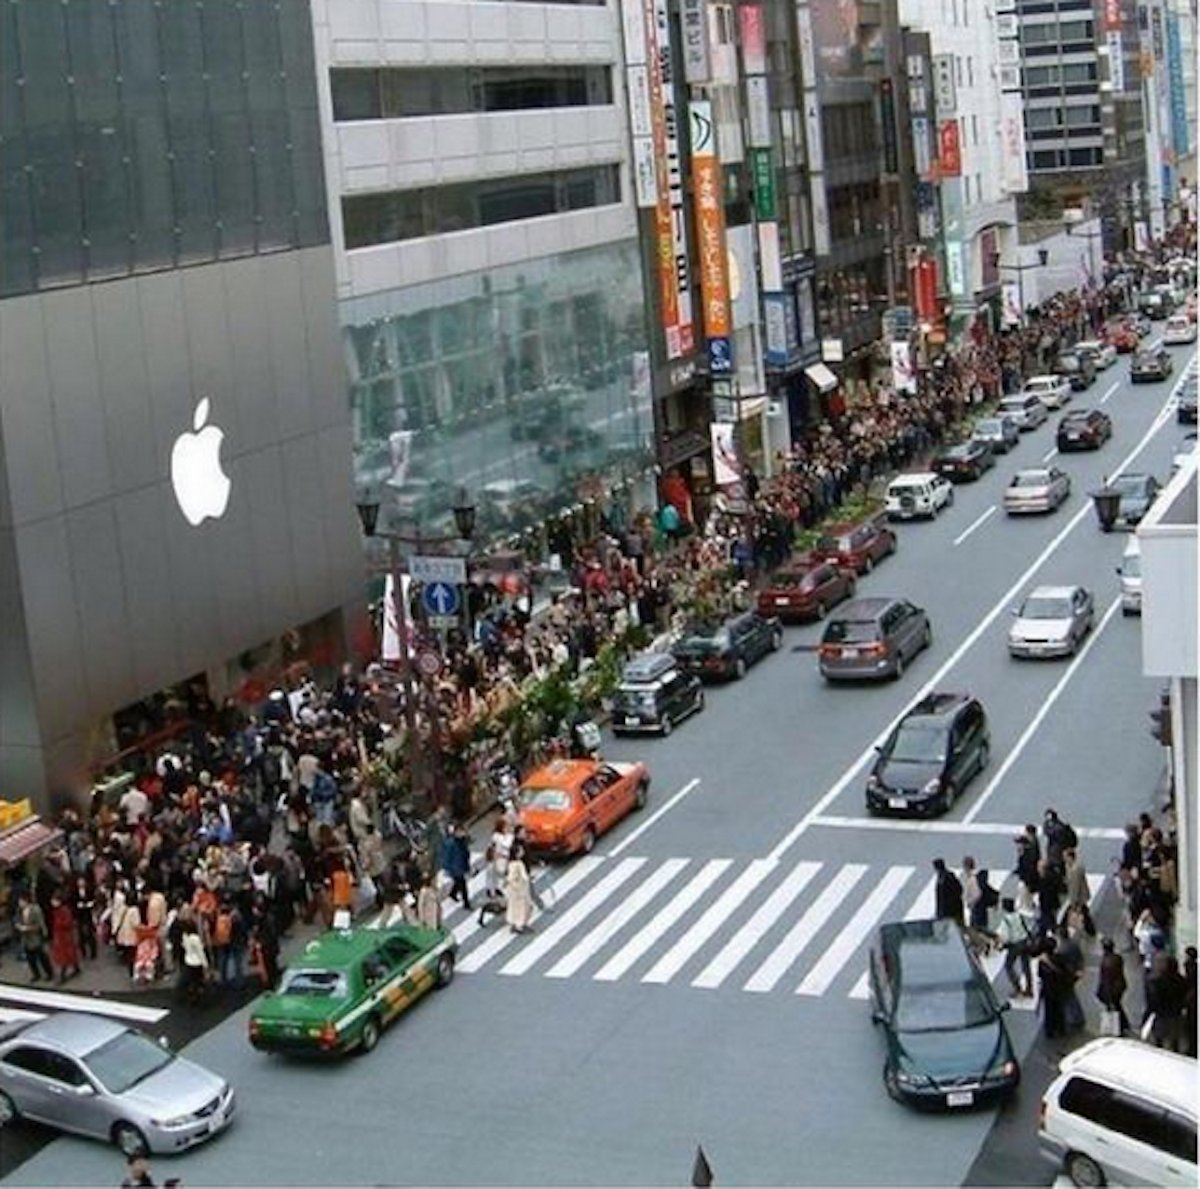 بالصور .. الآلاف من عشاق أبل يزدحمون أمام متاجرها لشراء آيفون 6 8